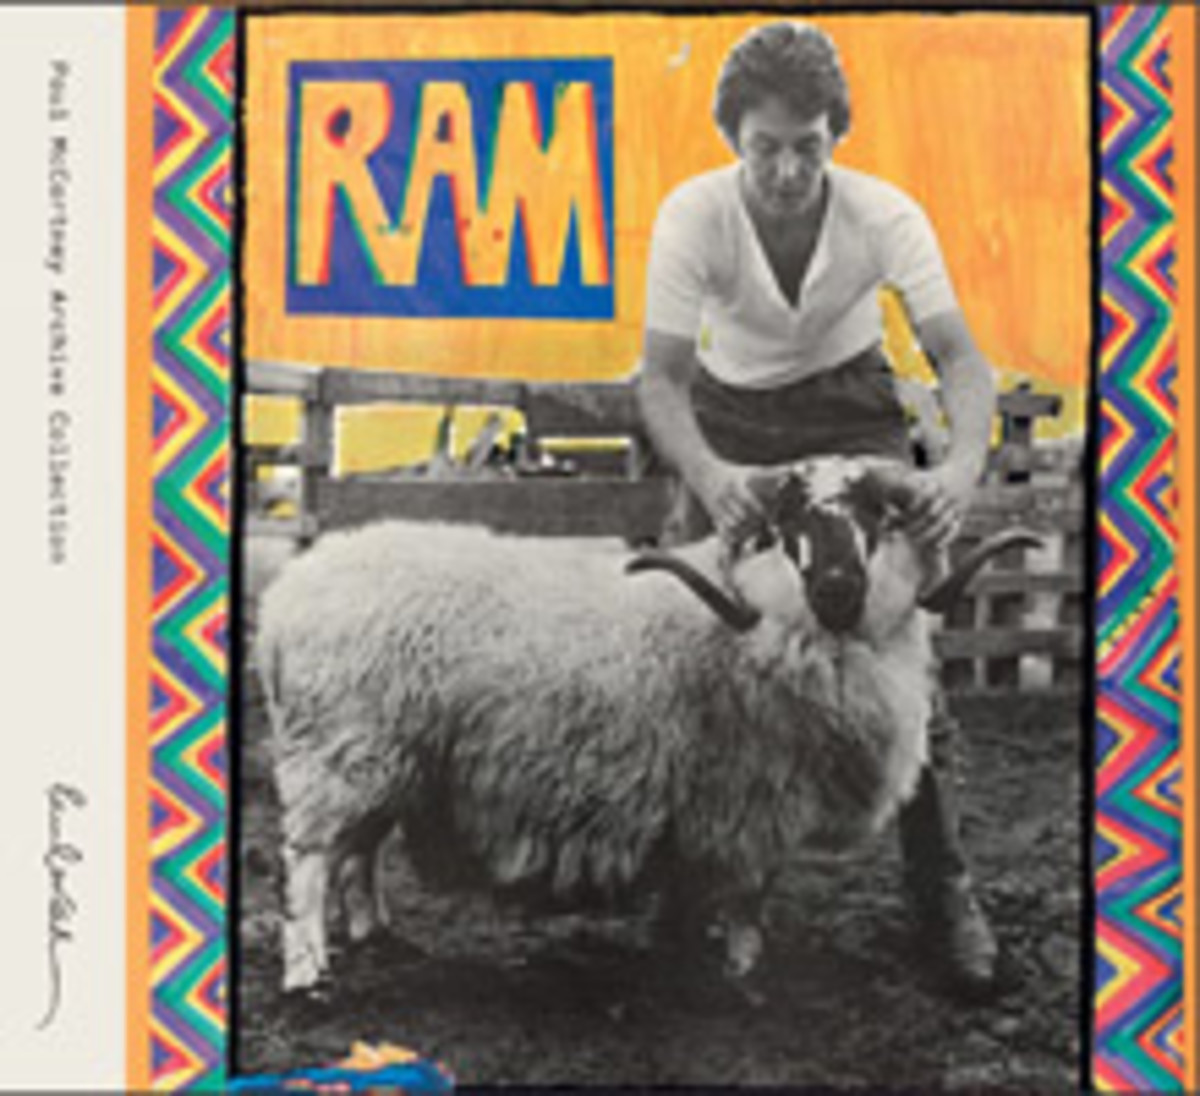 Paul McCartney Ram